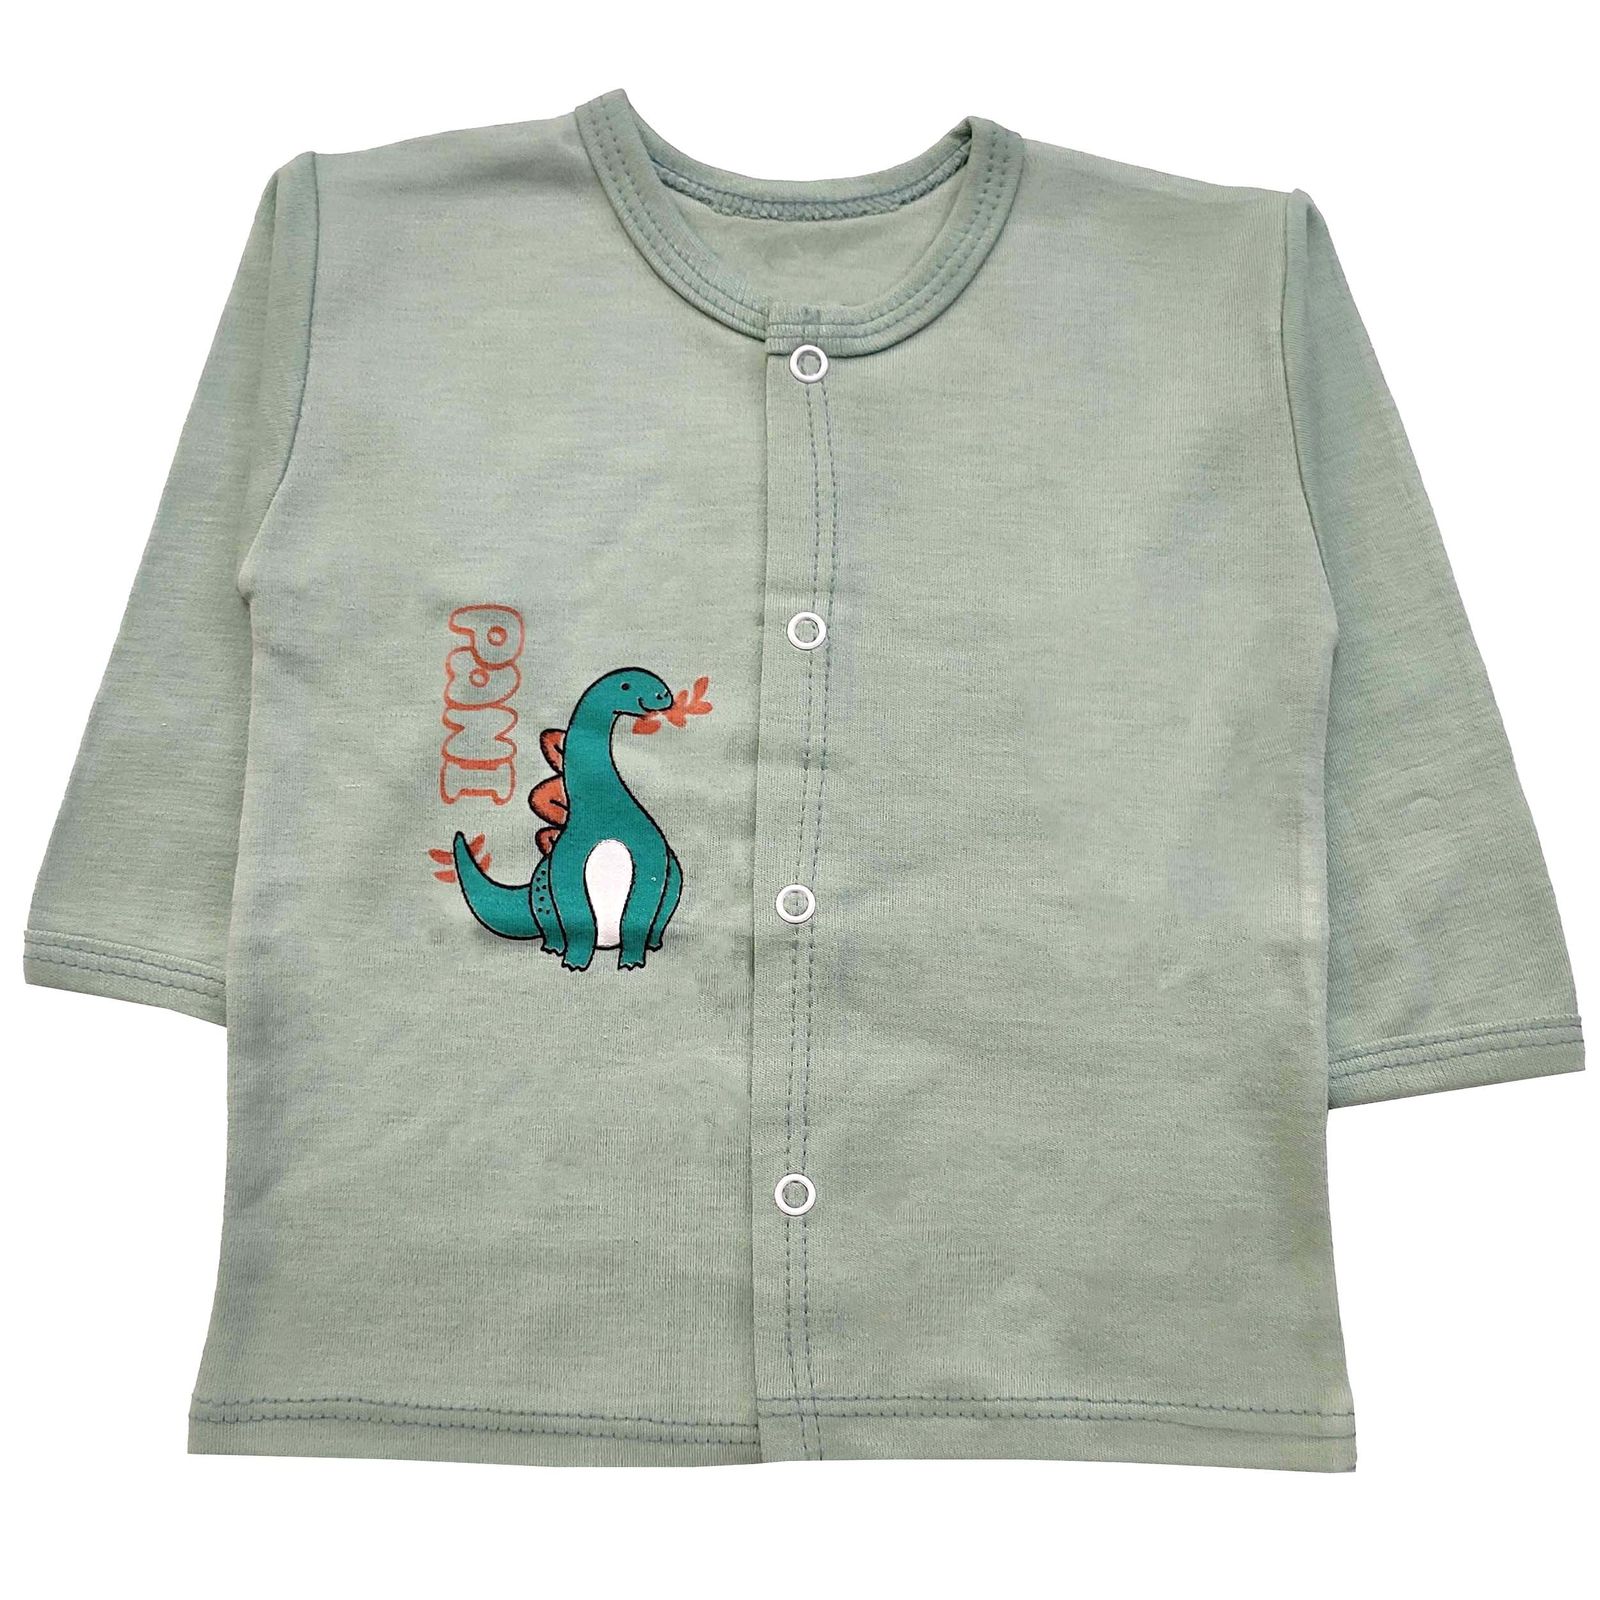 ست 3 تکه لباس نوزادی مدل دایناسور کد 3926 رنگ سبز -  - 2